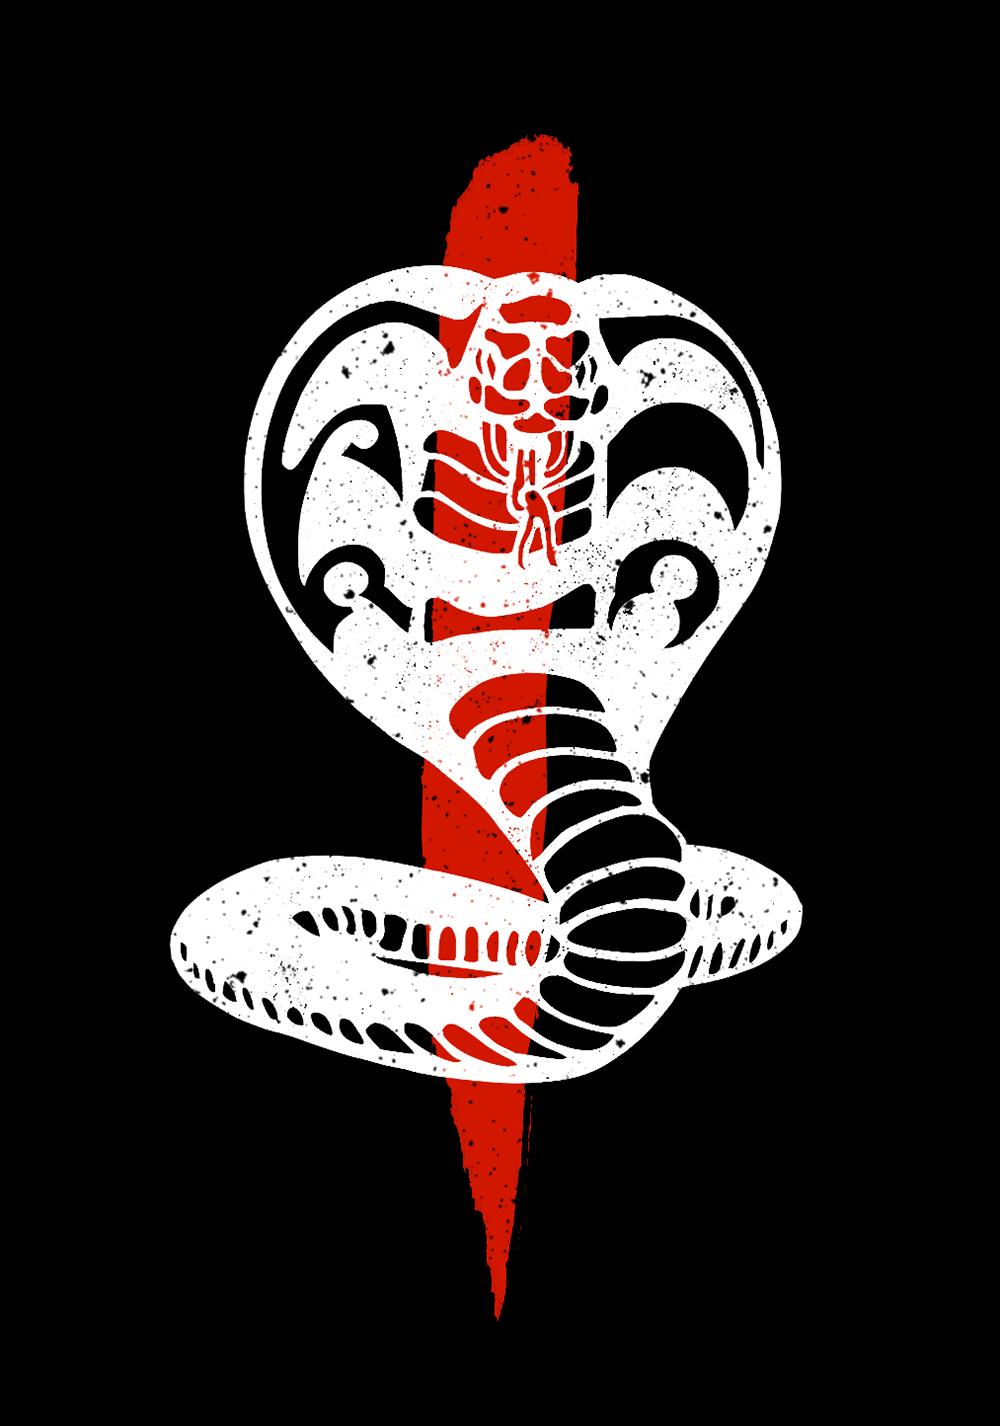 Cobra Kai' wallpaper to reminiscerepublicworld.com